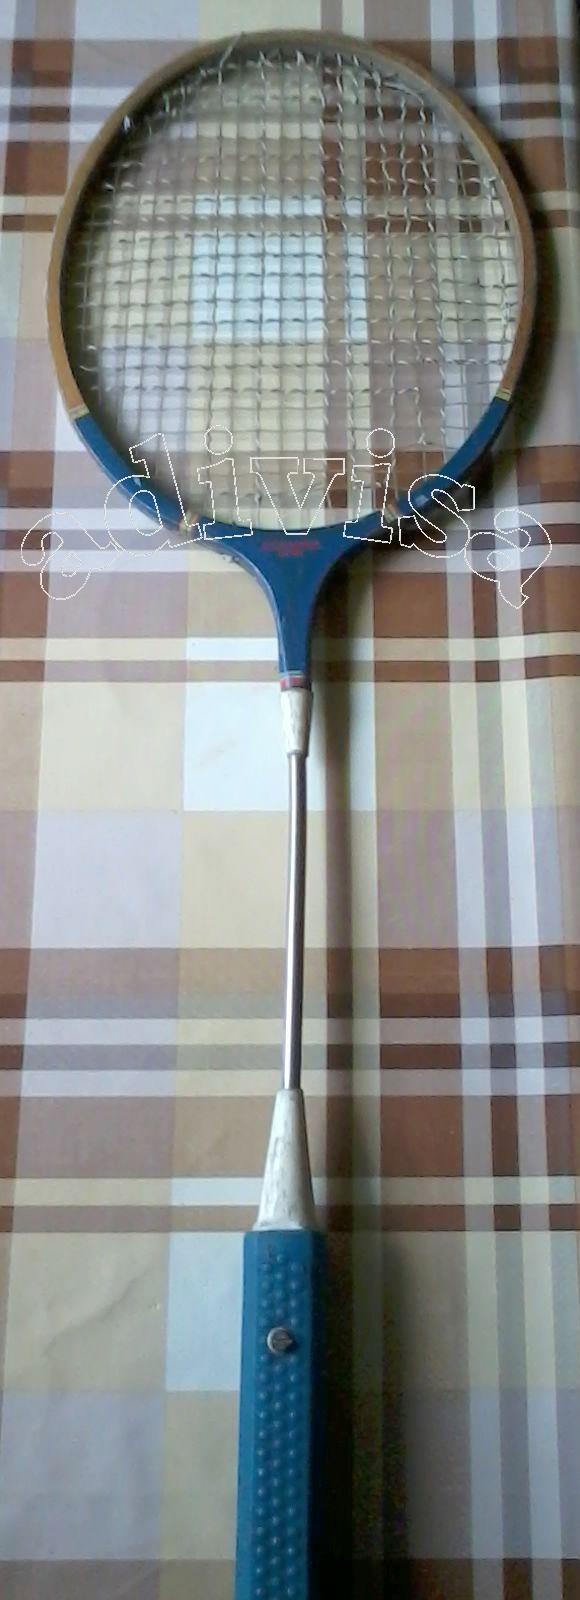 badminton pentru slăbire)